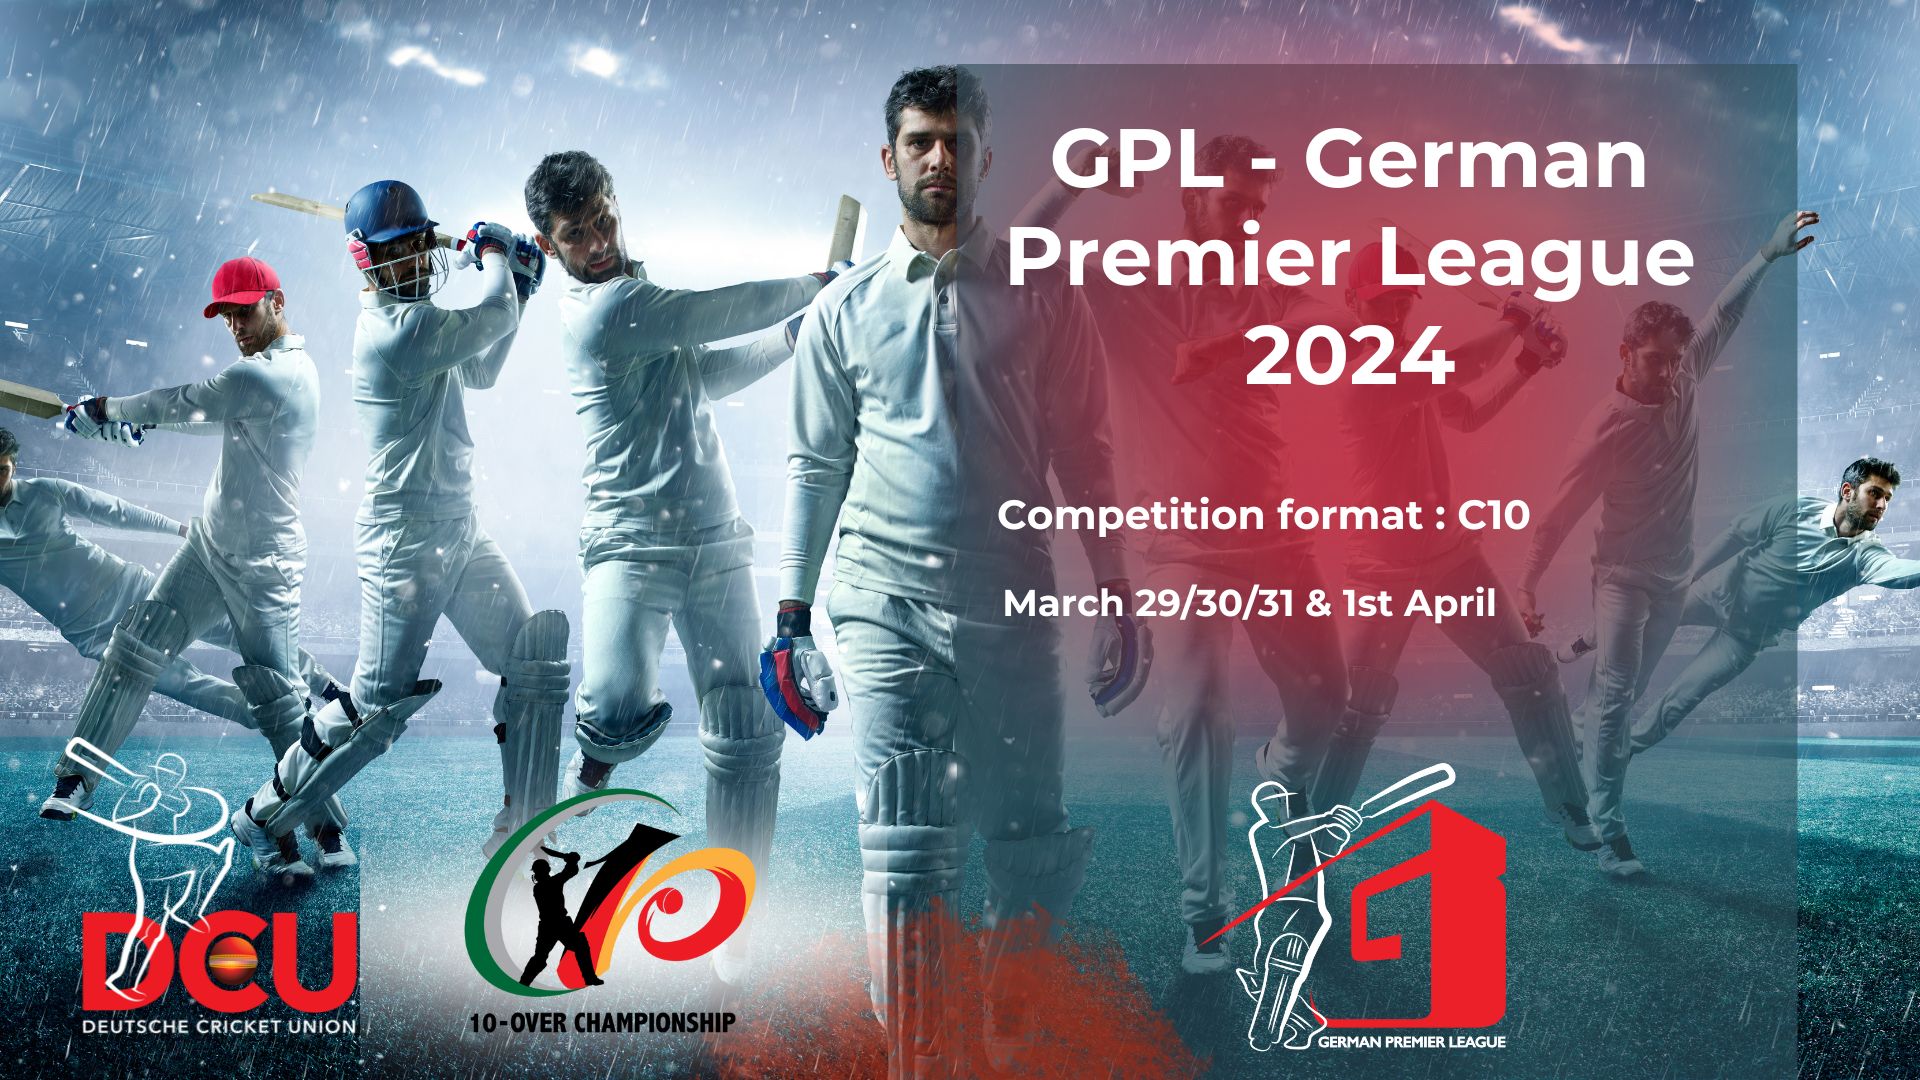 GPL – German Premier League 2024